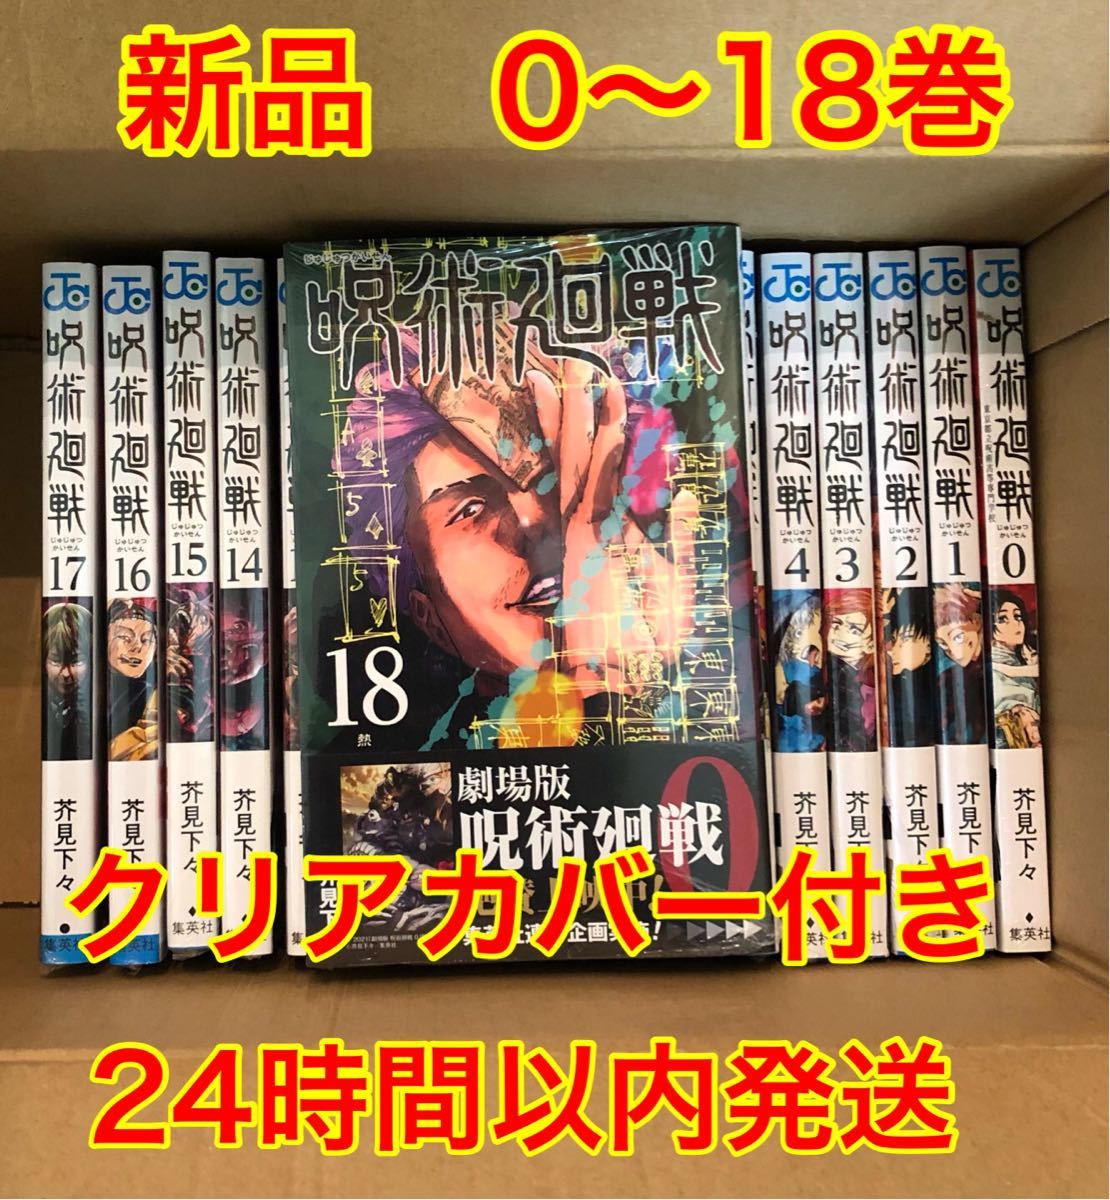 呪術廻戦 0-18巻 新品未読 全巻漫画セット 透明ブックカバー19枚付き